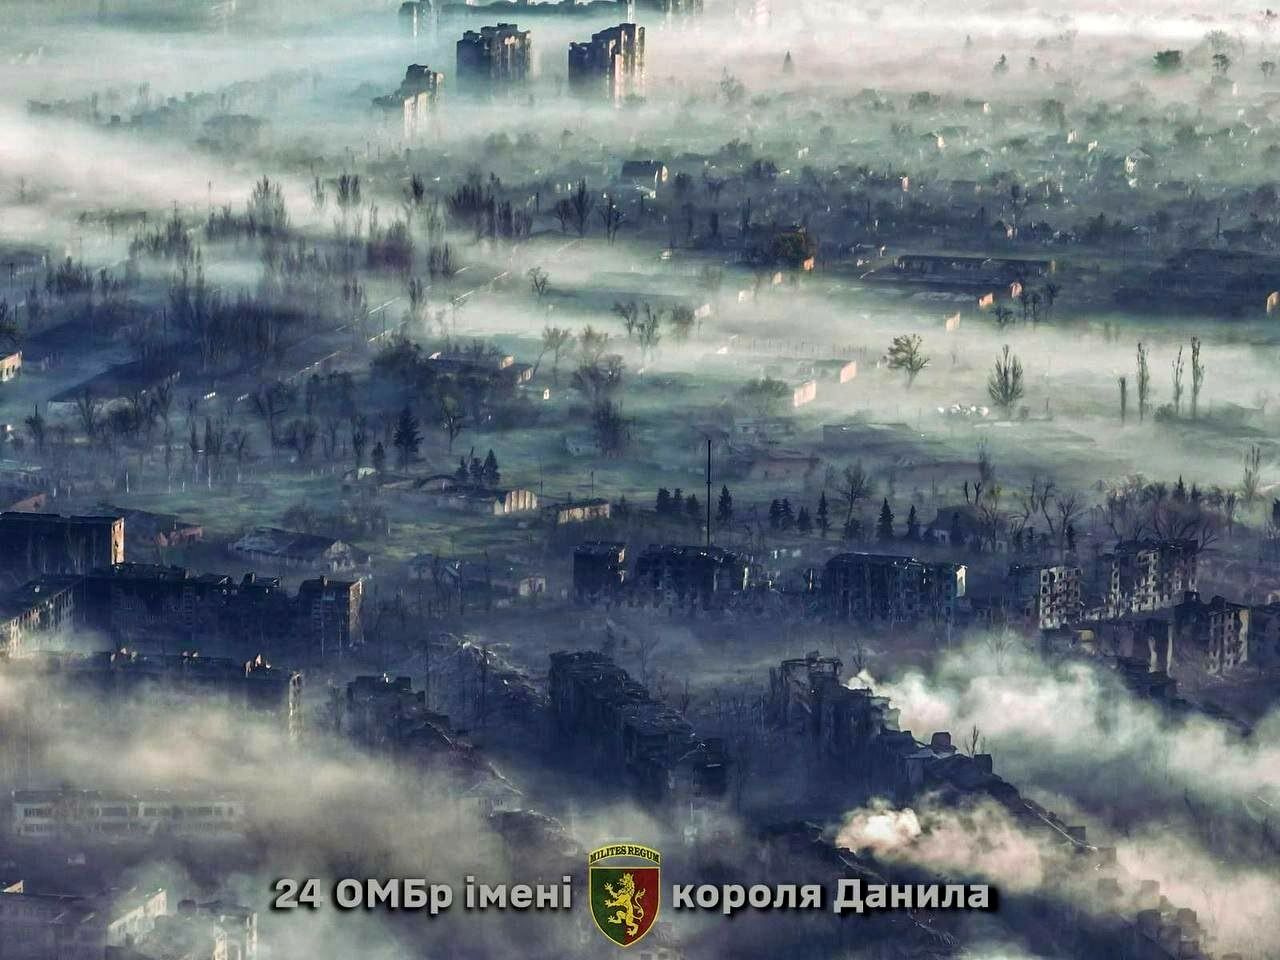 (تصاویر) شهر باخموت اوکراین به شهر ارواح تبدیل شد!